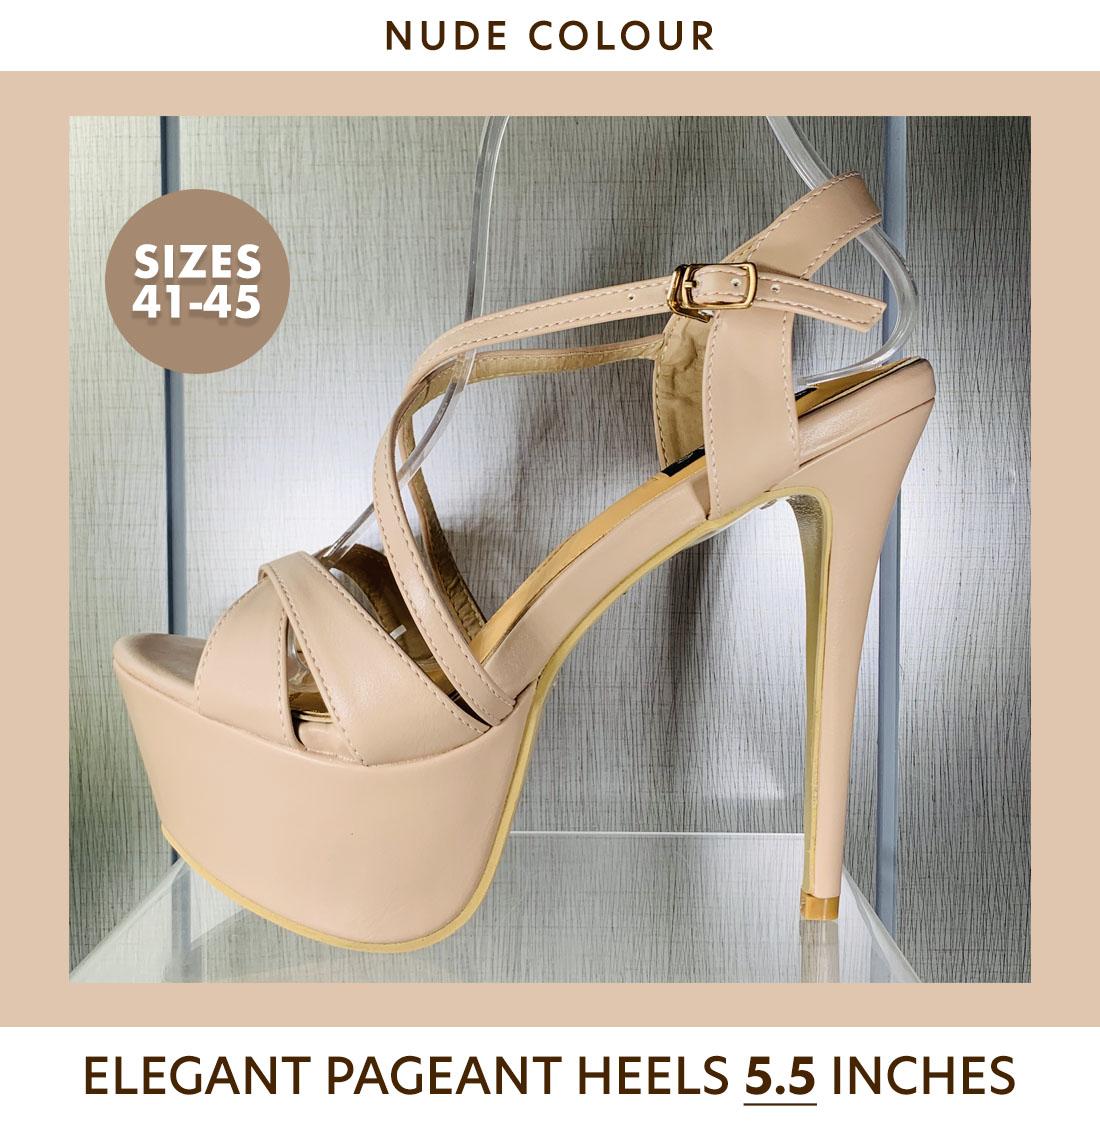 nude heels size 5.5